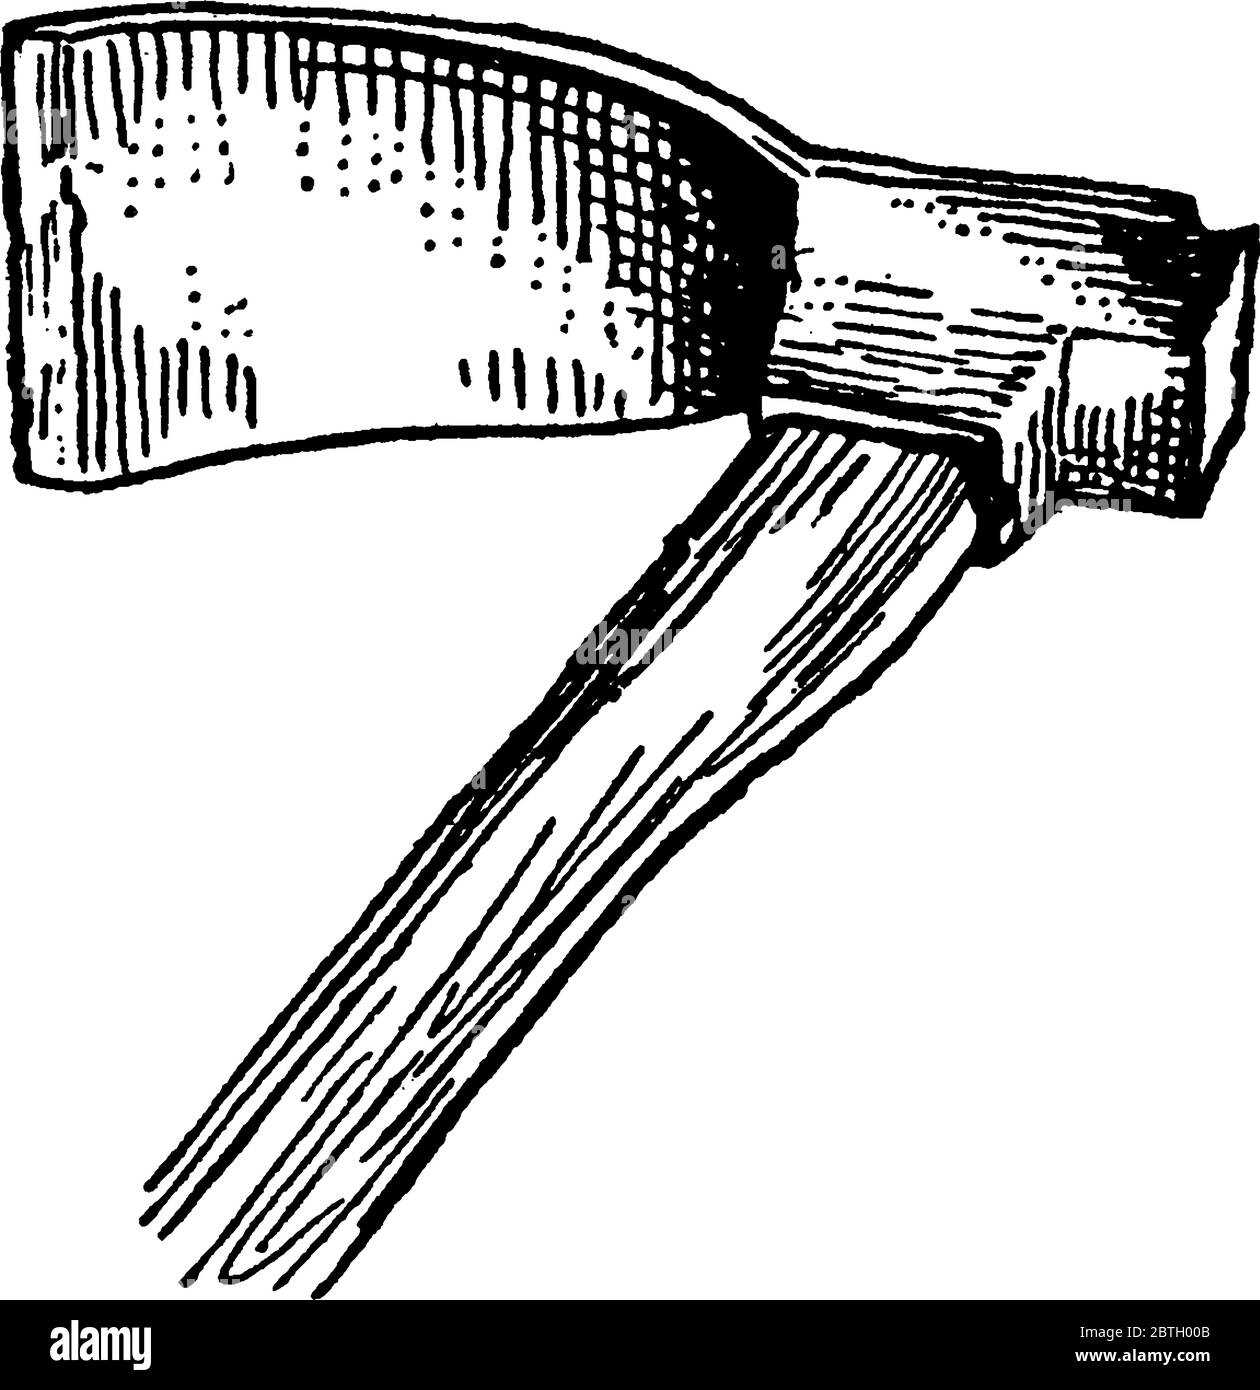 Ein Holzschneidwerkzeug, das adz, das eine gebogene Klinge und eine gerade Schneide hat, mit einer Lünette wie ein Meißel, Vintage-Strichzeichnung oder Gravur illust Stock Vektor